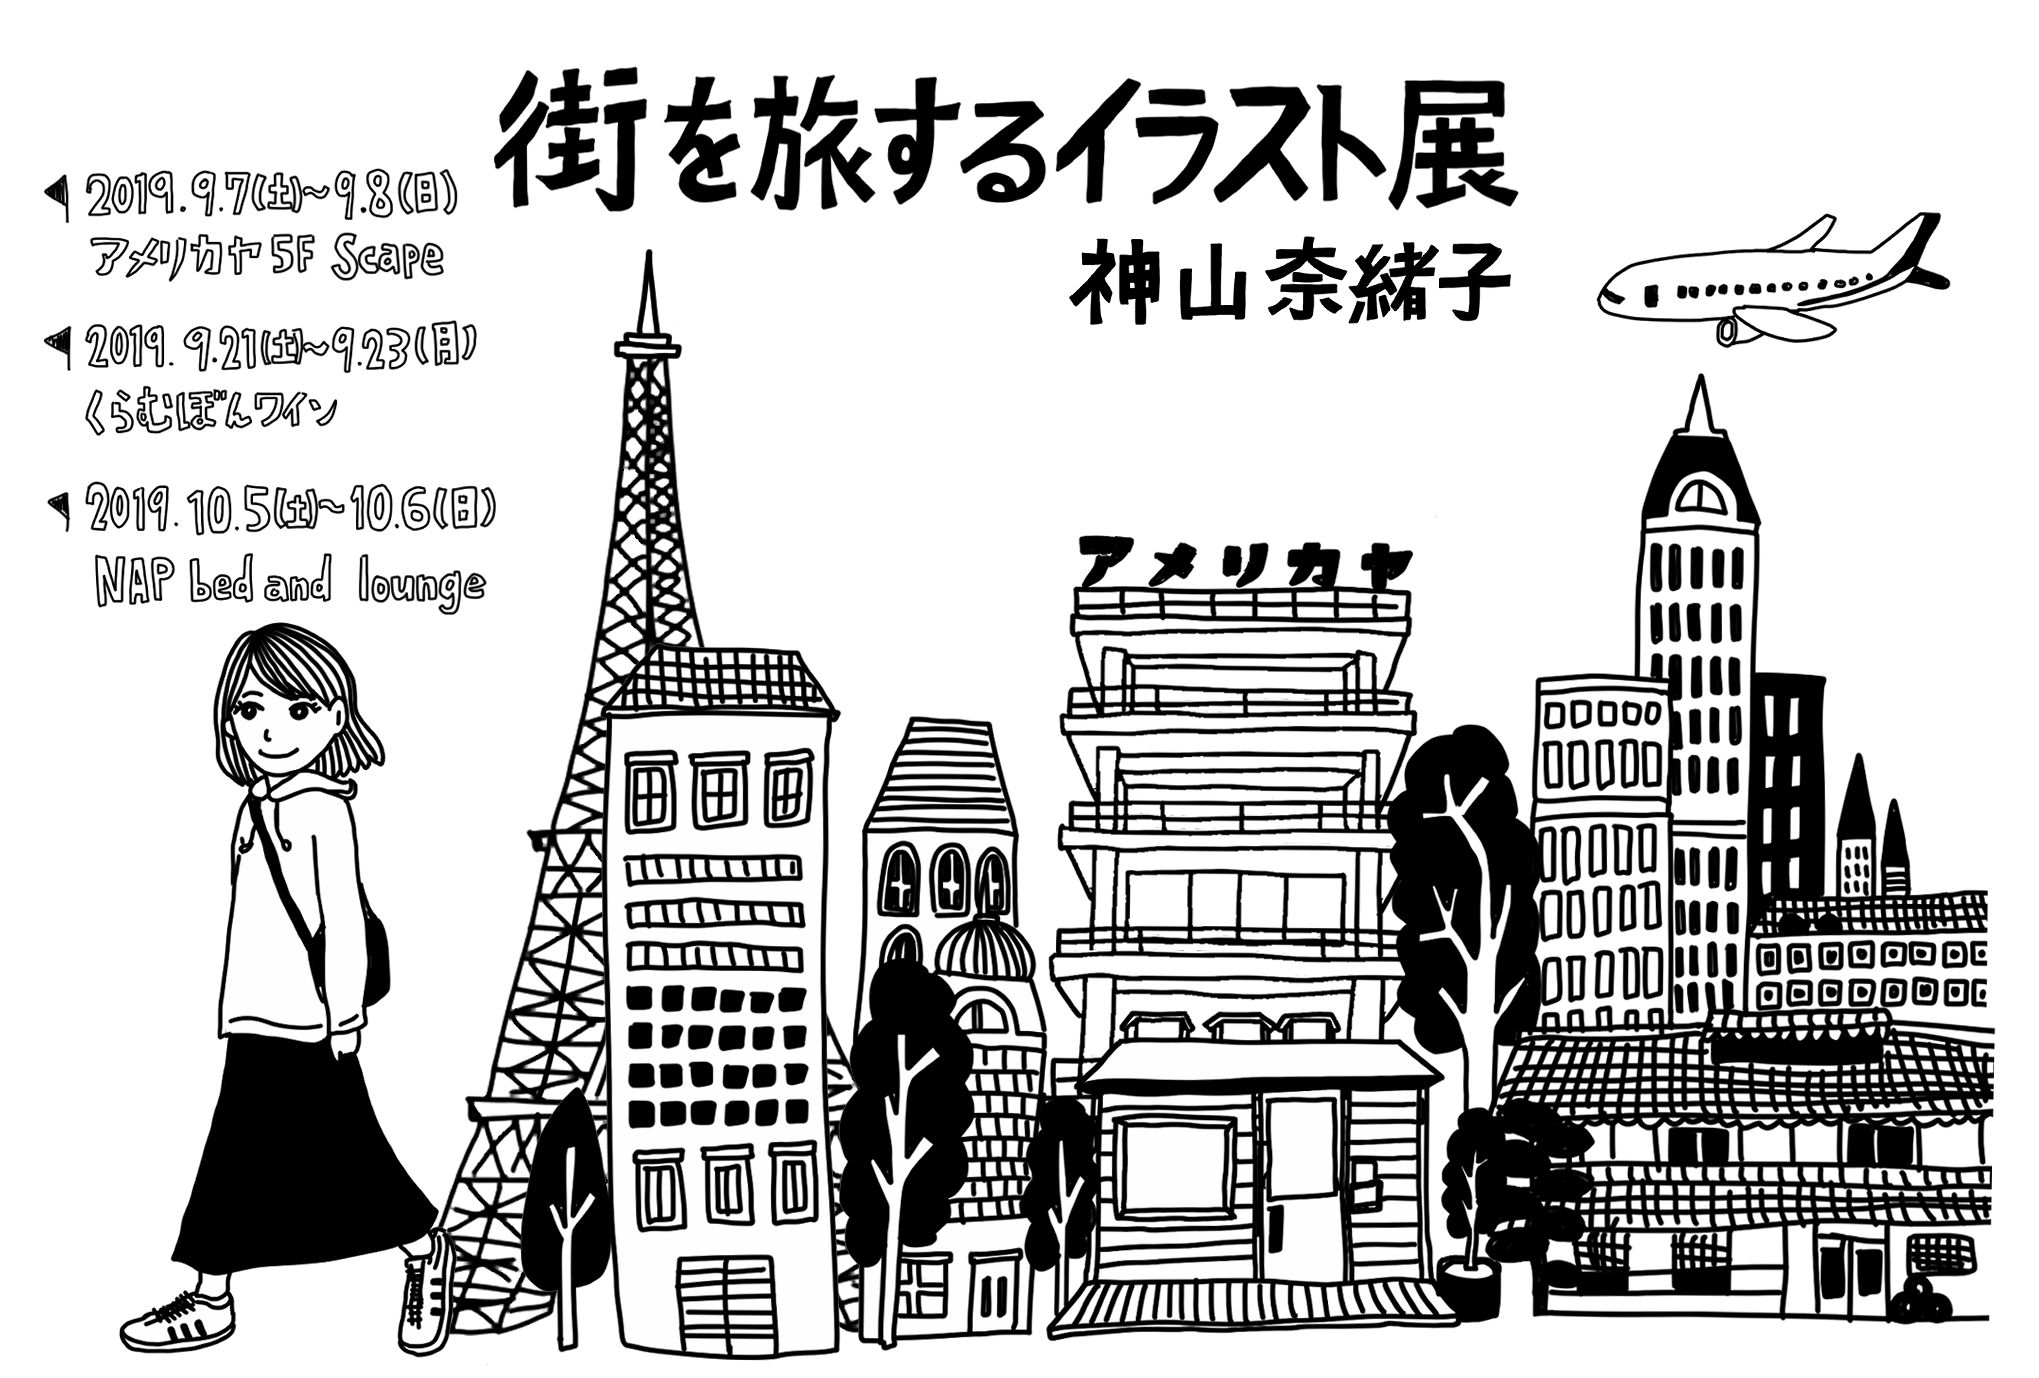 神山奈緒子 街を旅するイラスト展 アメリカヤ 山梨のイベント Porta